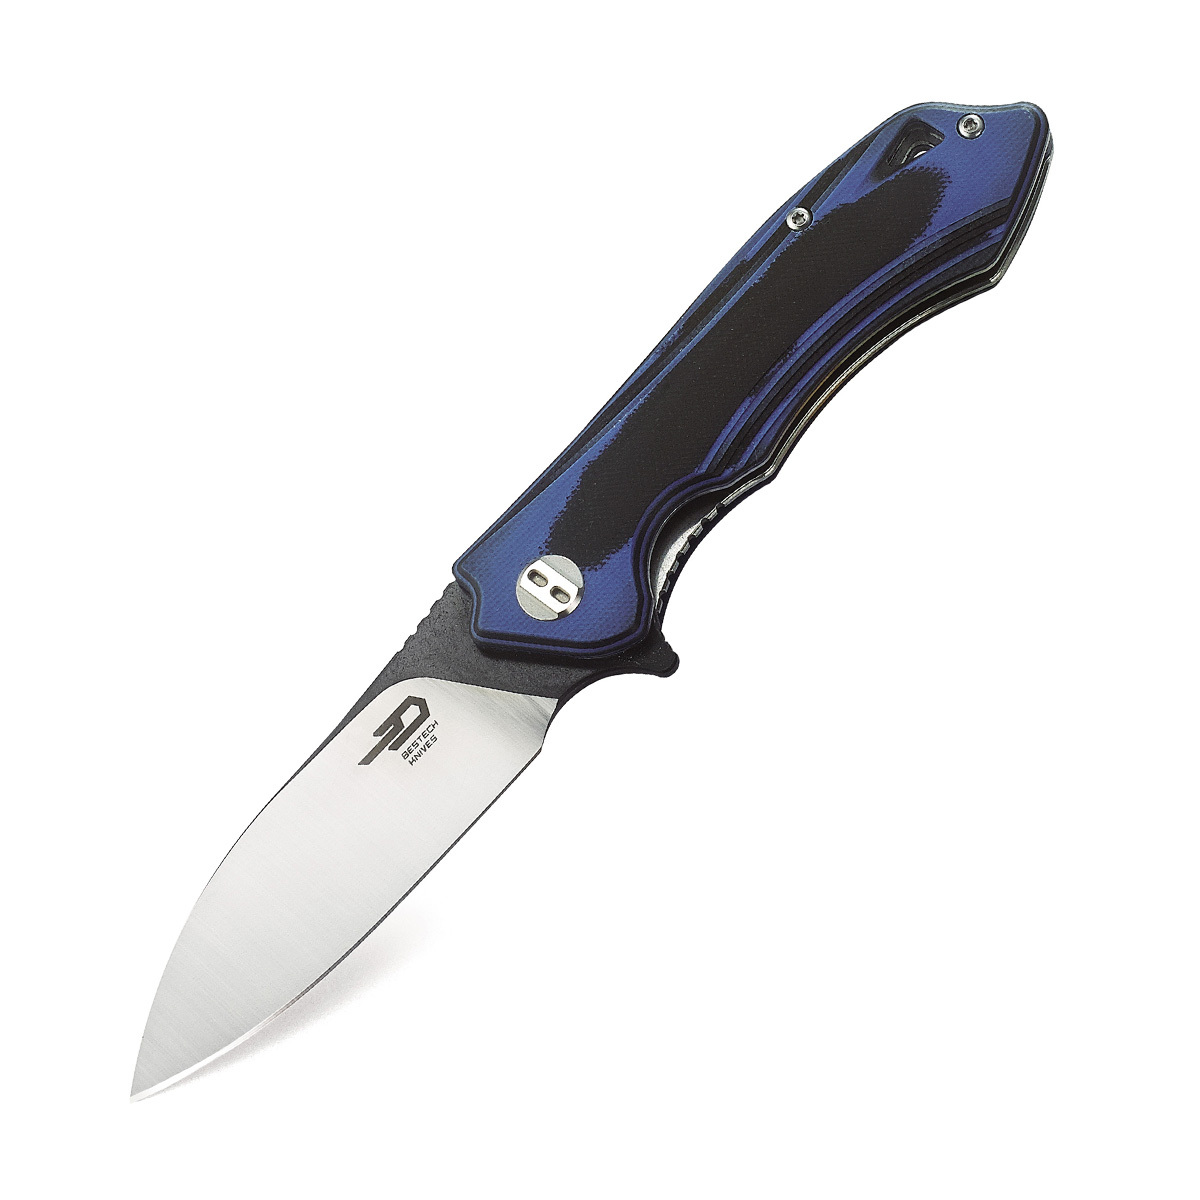 Складной нож Bestech Beluga, сталь D2, рукоять черно-синяя G10 складной нож bestech swift сталь d2 micarta